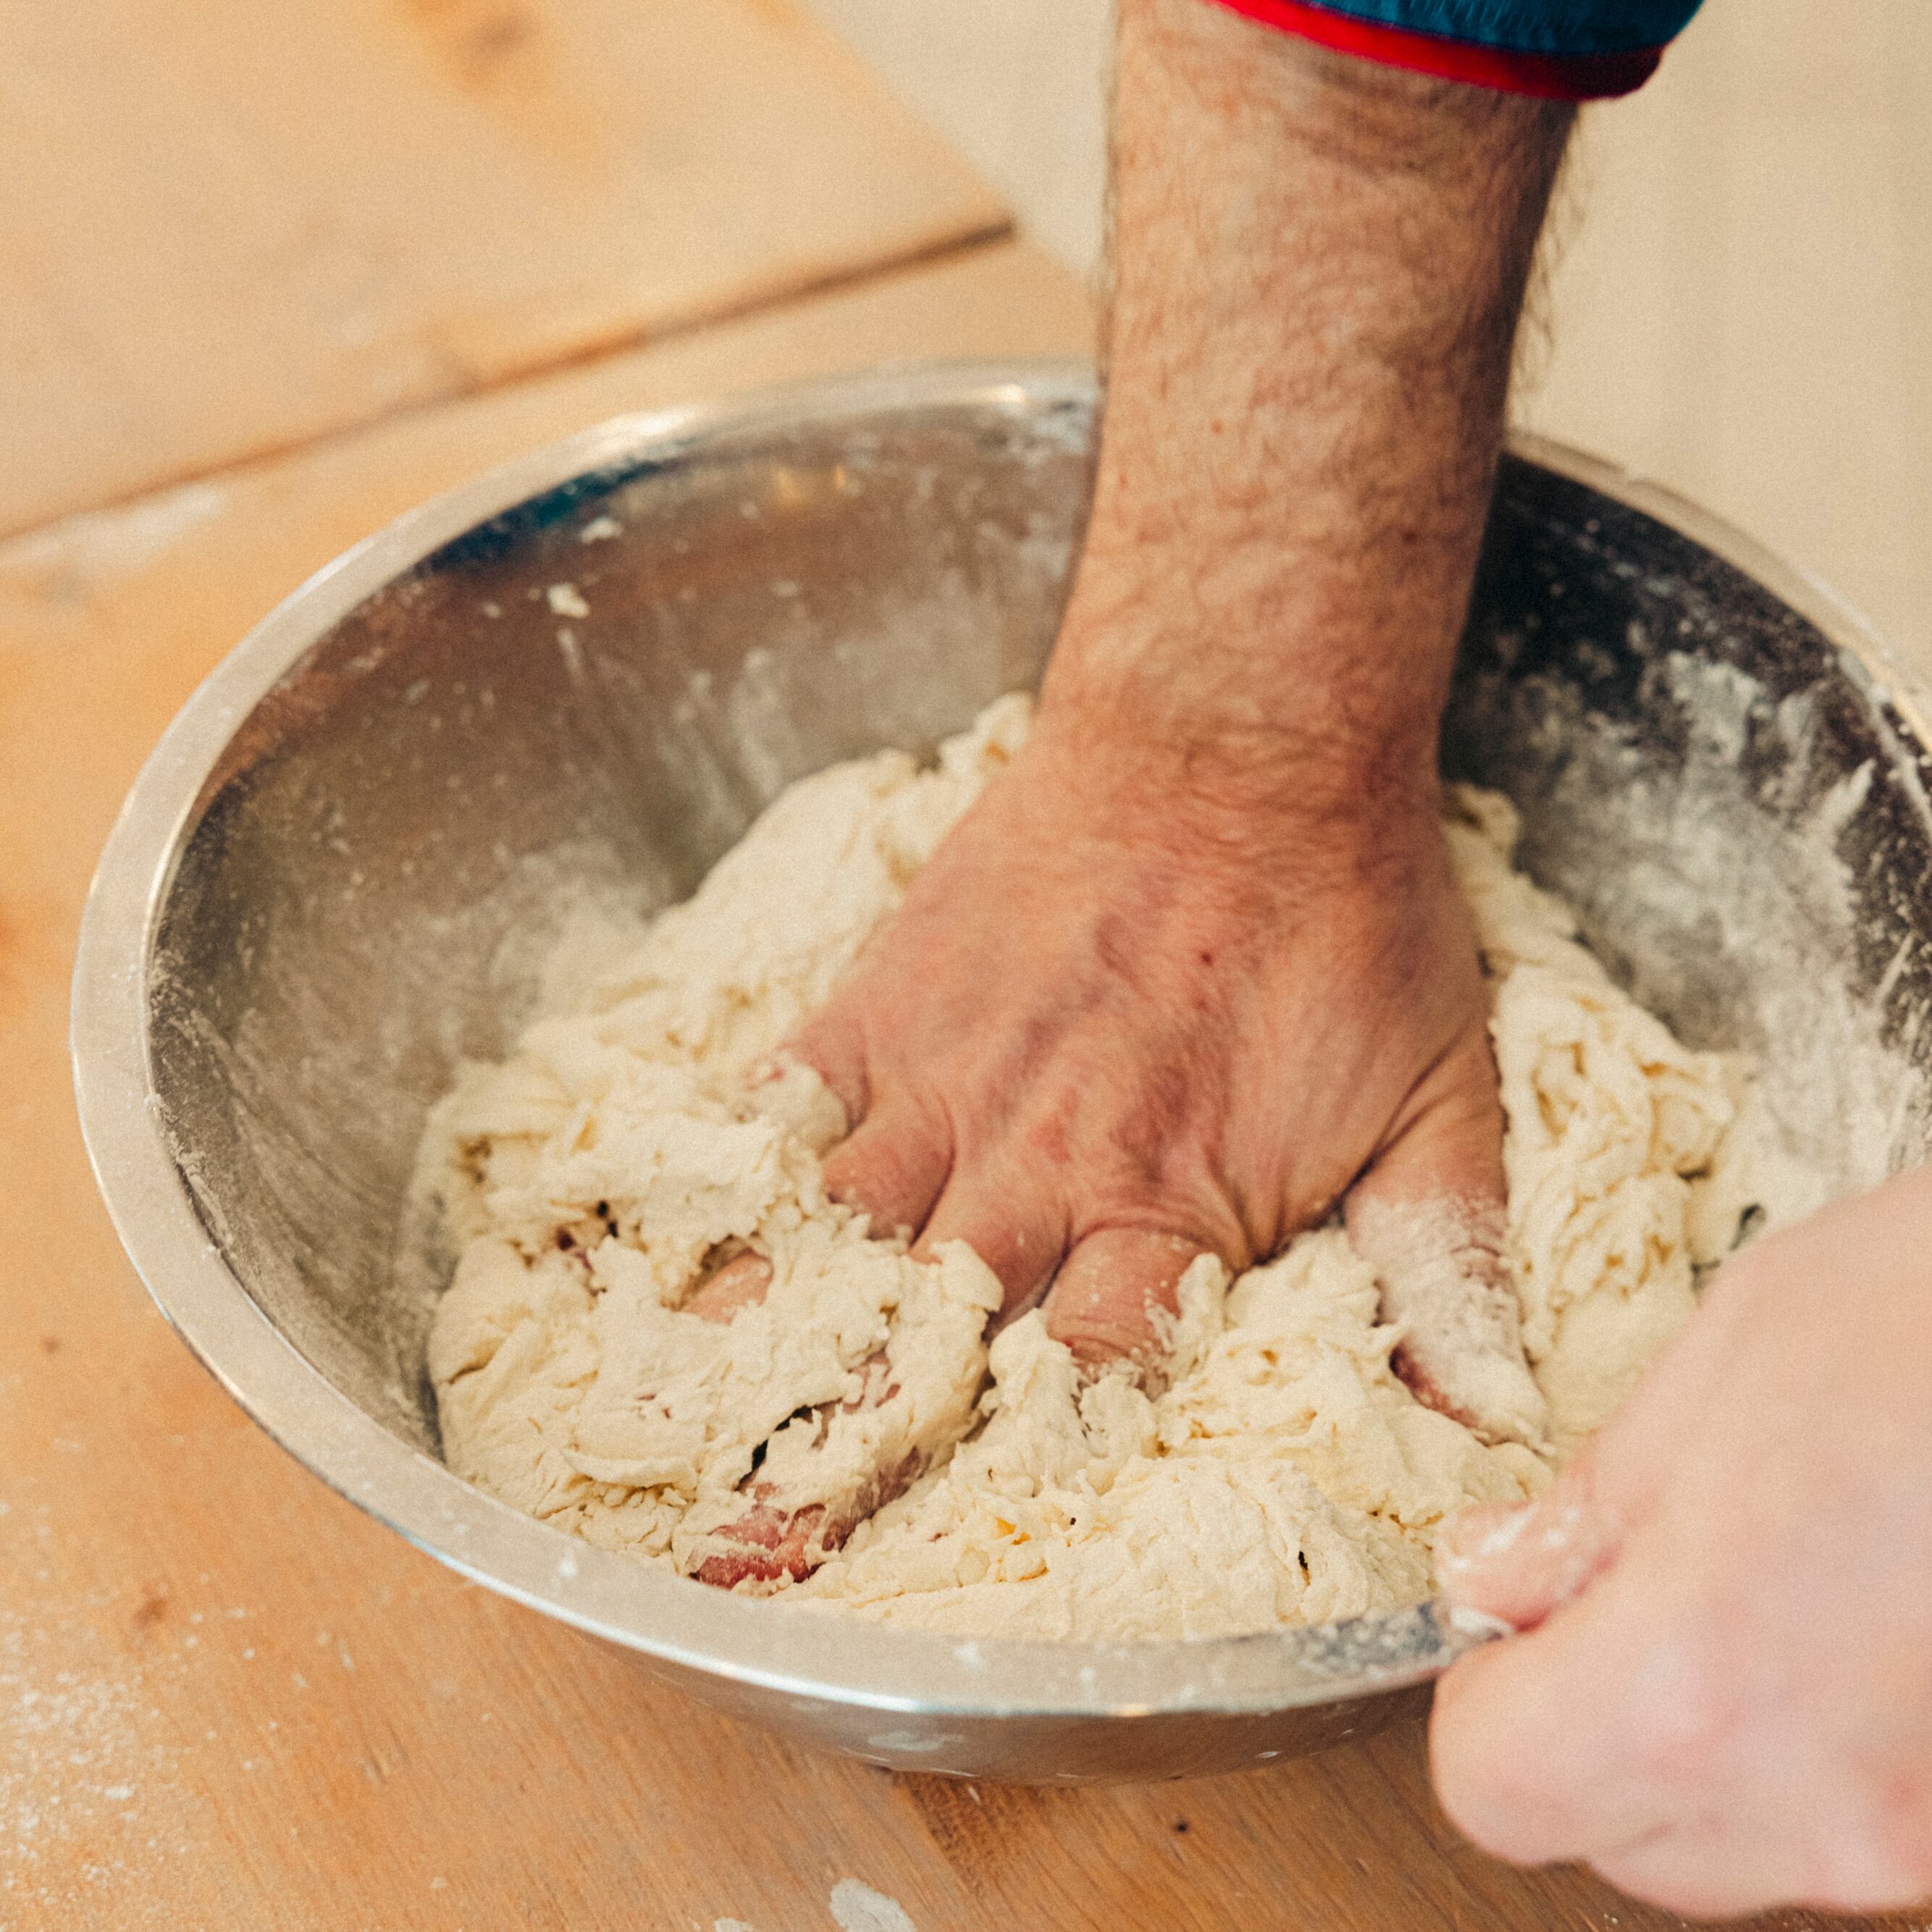 Uno de los maestros de la escuela de la Asociación de la Pizza Napolitana Verdadera comienza la preparación de la masa. La primera parte consiste en mezclar bien la harina, el agua y la levadura